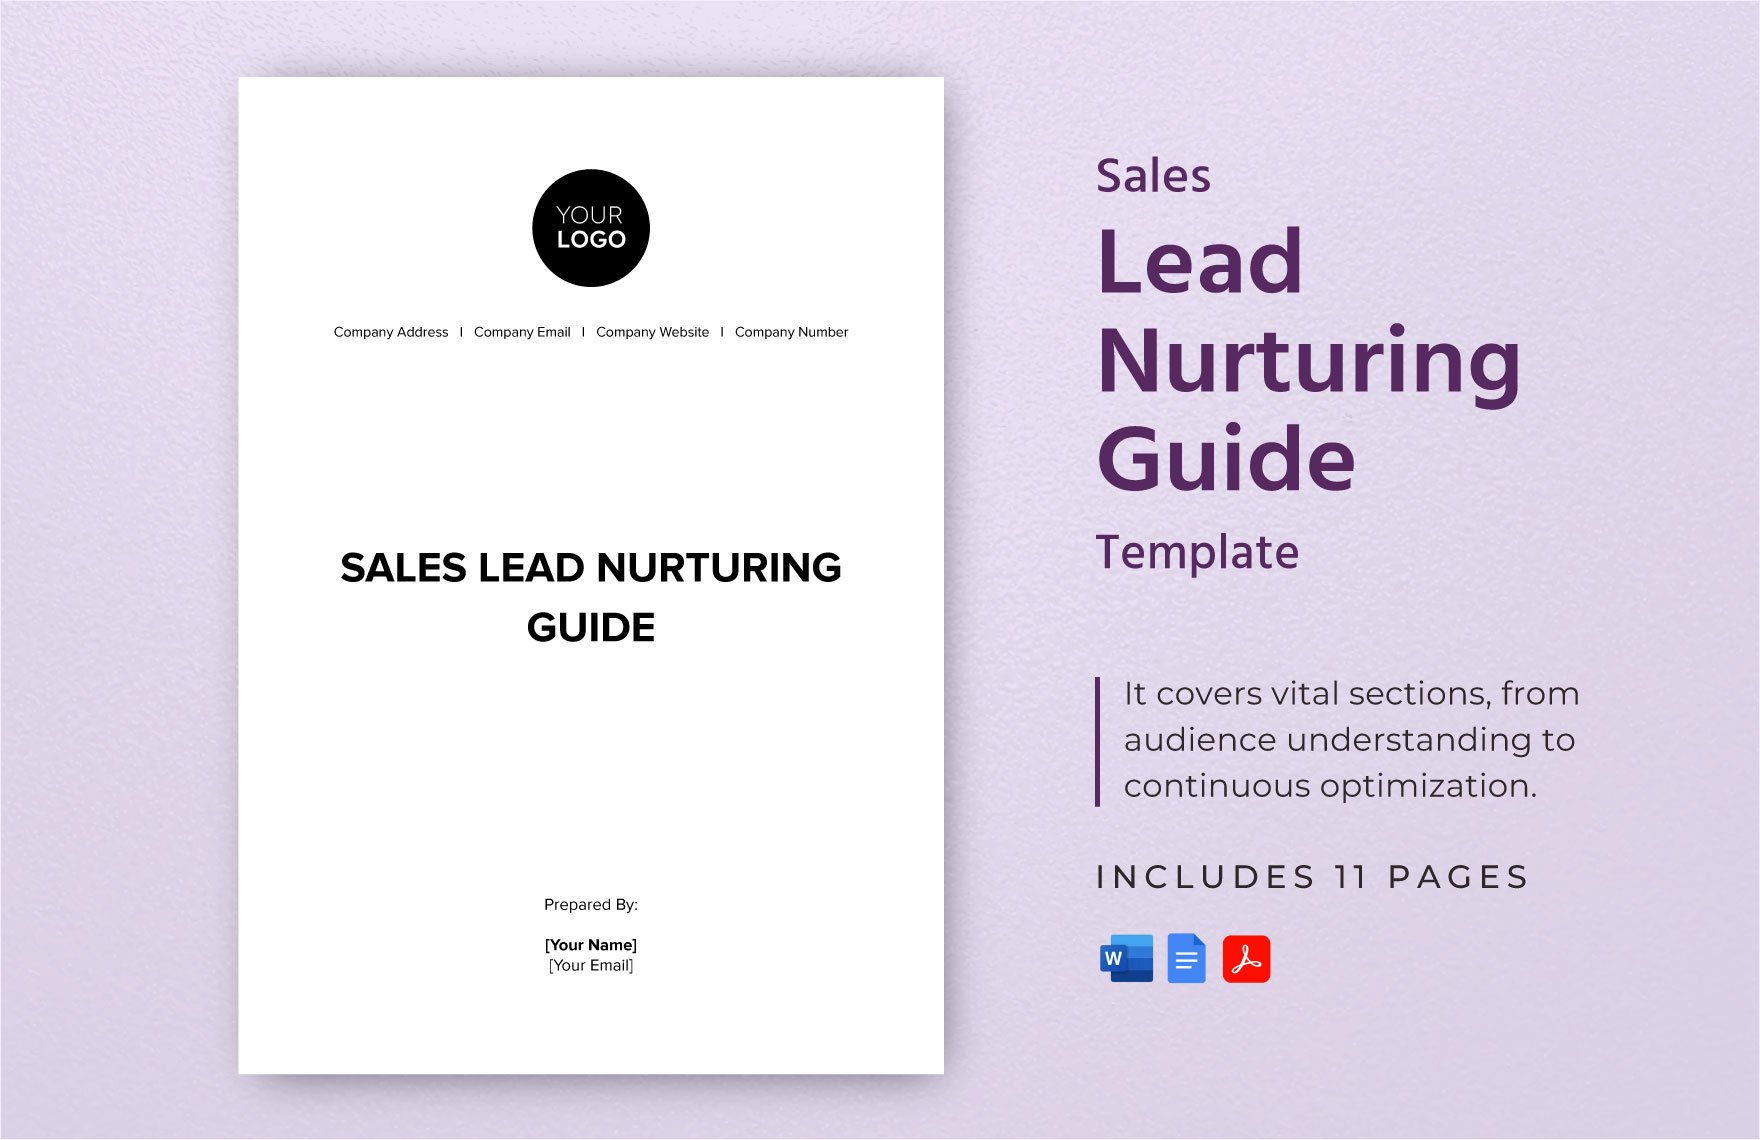 Sales Lead Nurturing Guide Template in Word, Google Docs, PDF